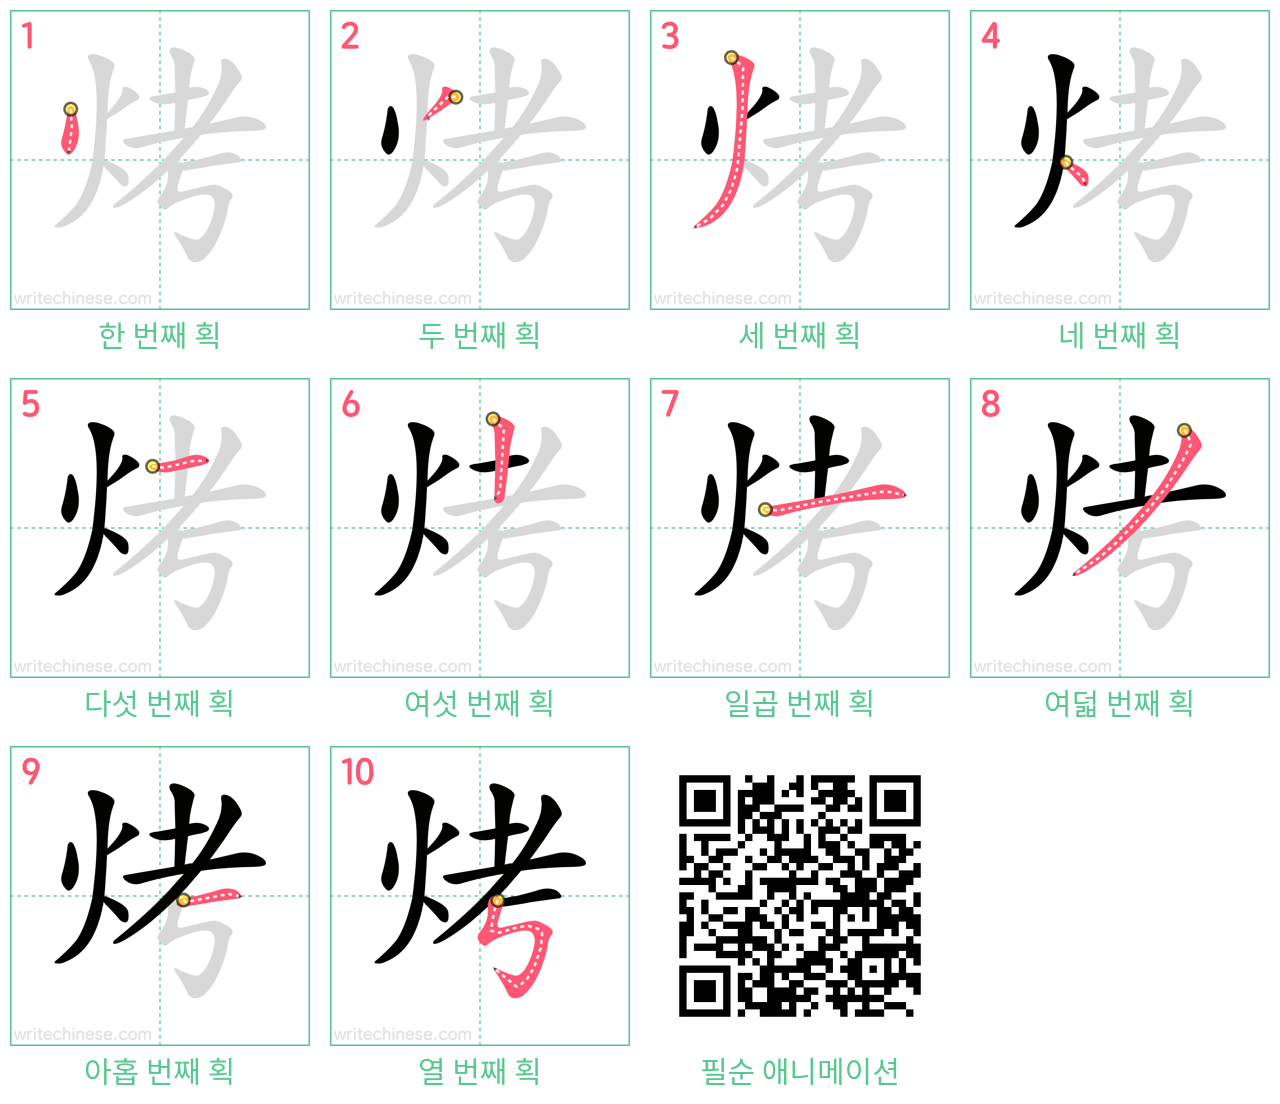 烤 step-by-step stroke order diagrams